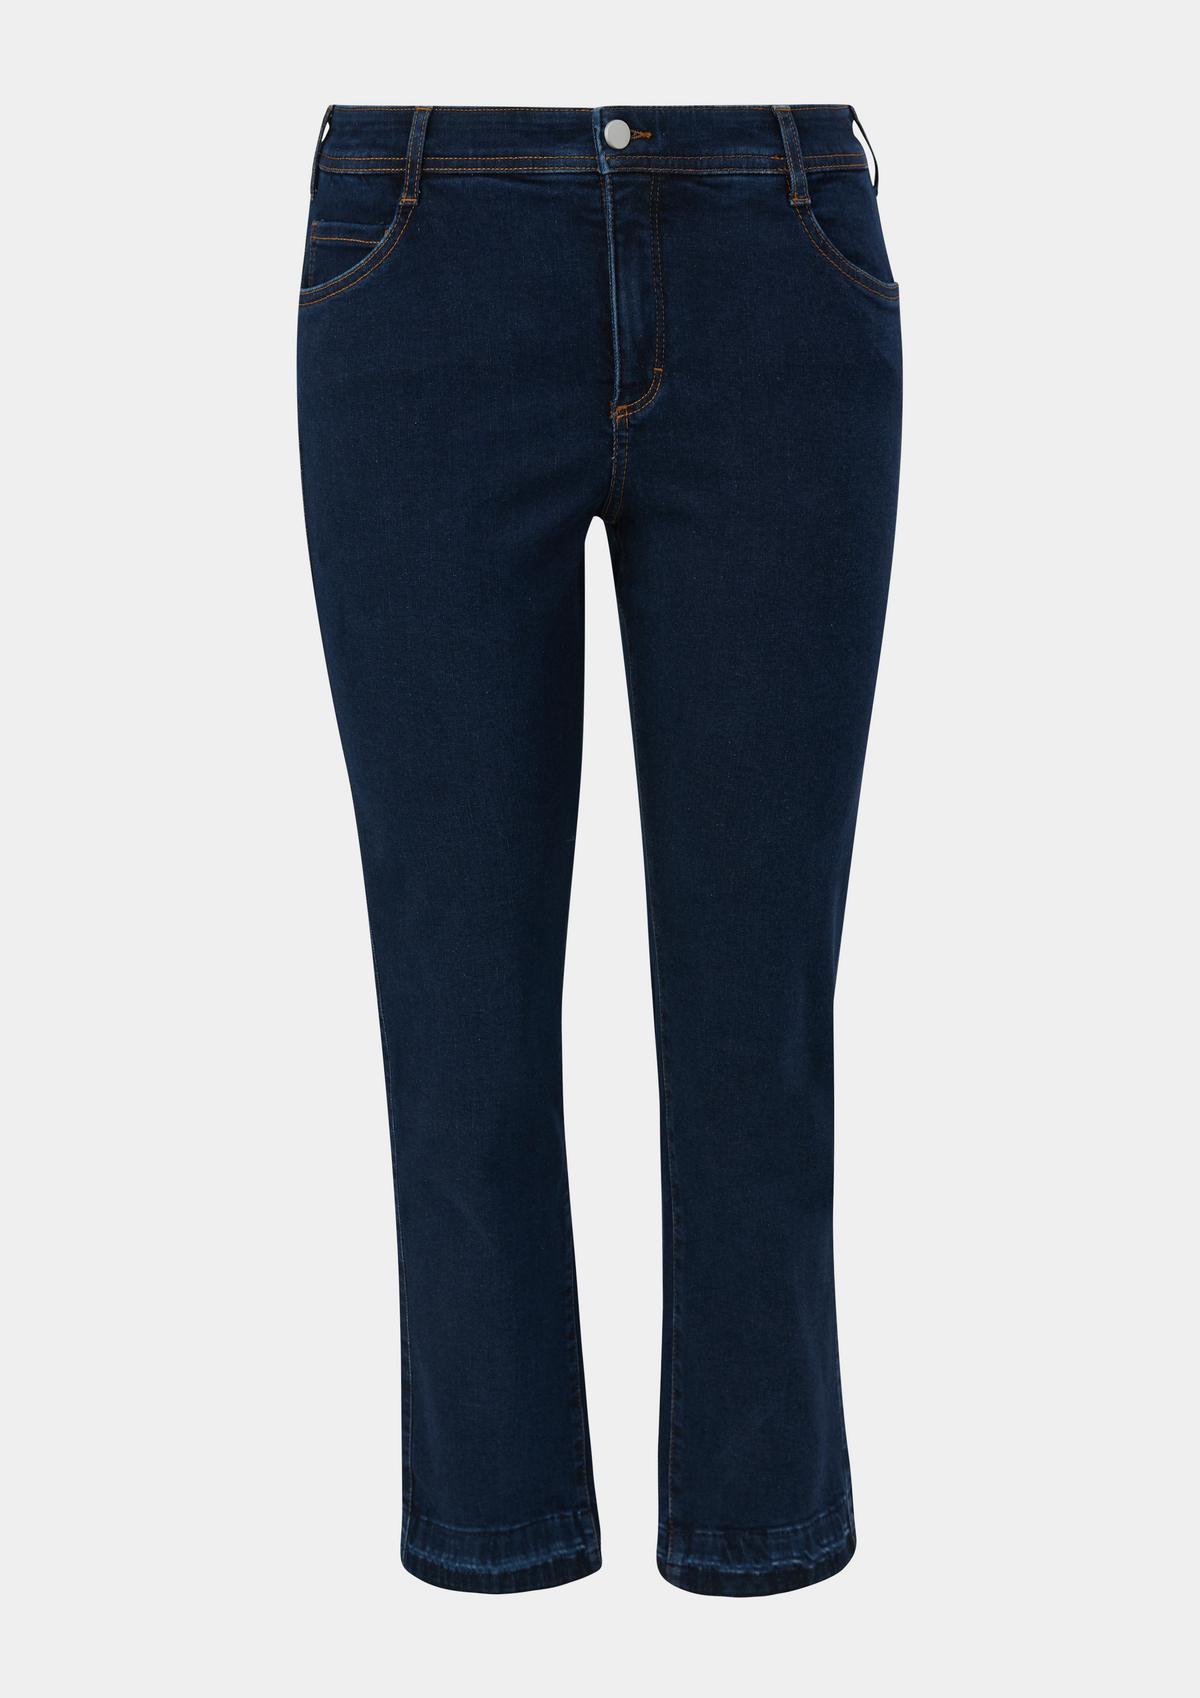 s.Oliver Jeans hlače / kroj Regular Fit / Mid Rise / kroj Slim Leg / barvani šivi